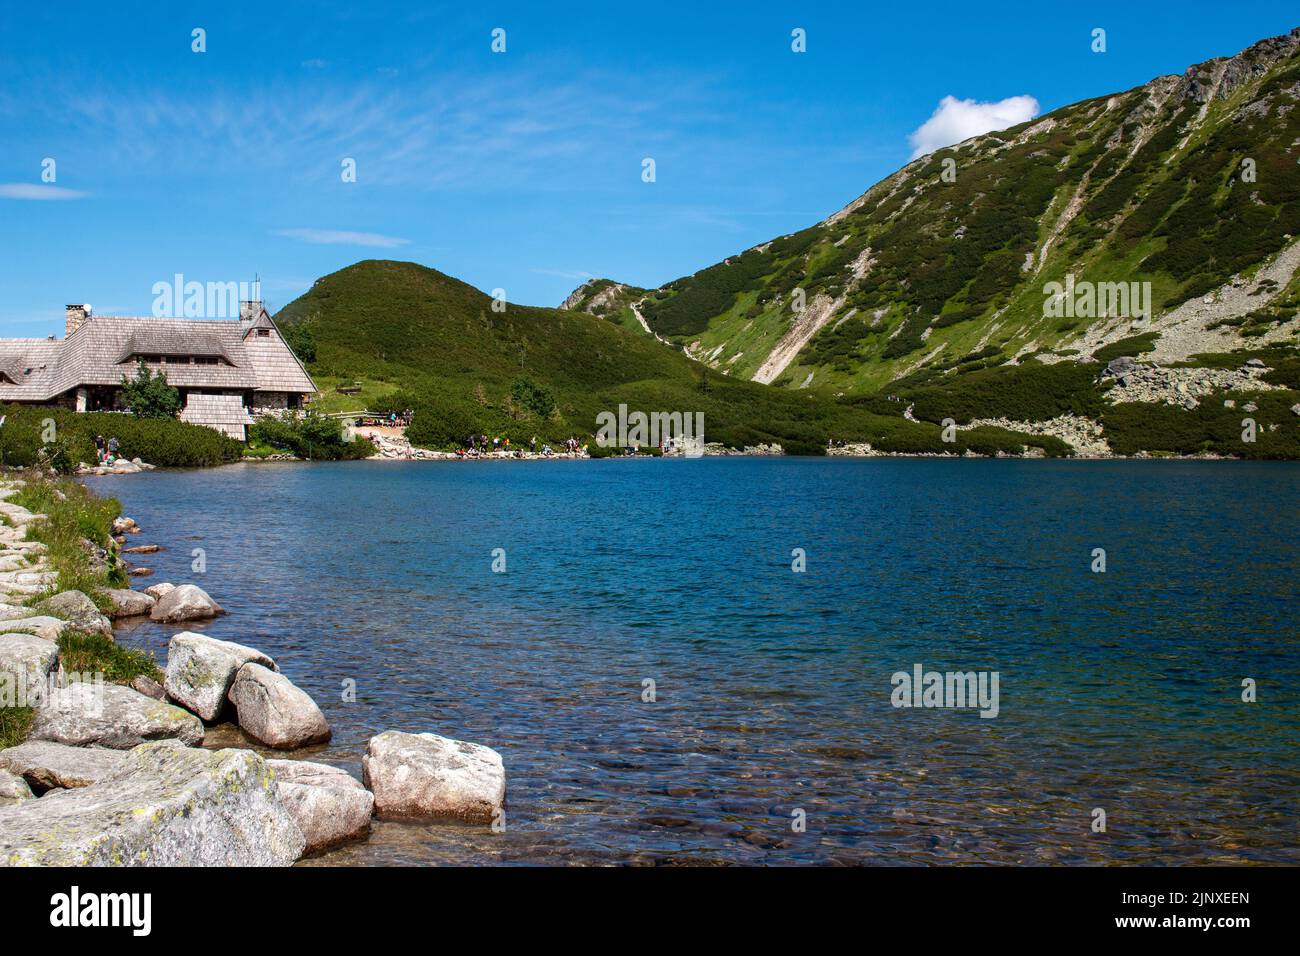 Schronisko w Dolinie Pieciu Stawow Mountain hut  by the lake in Tatry mountains near Zakopane, Poland Stock Photo